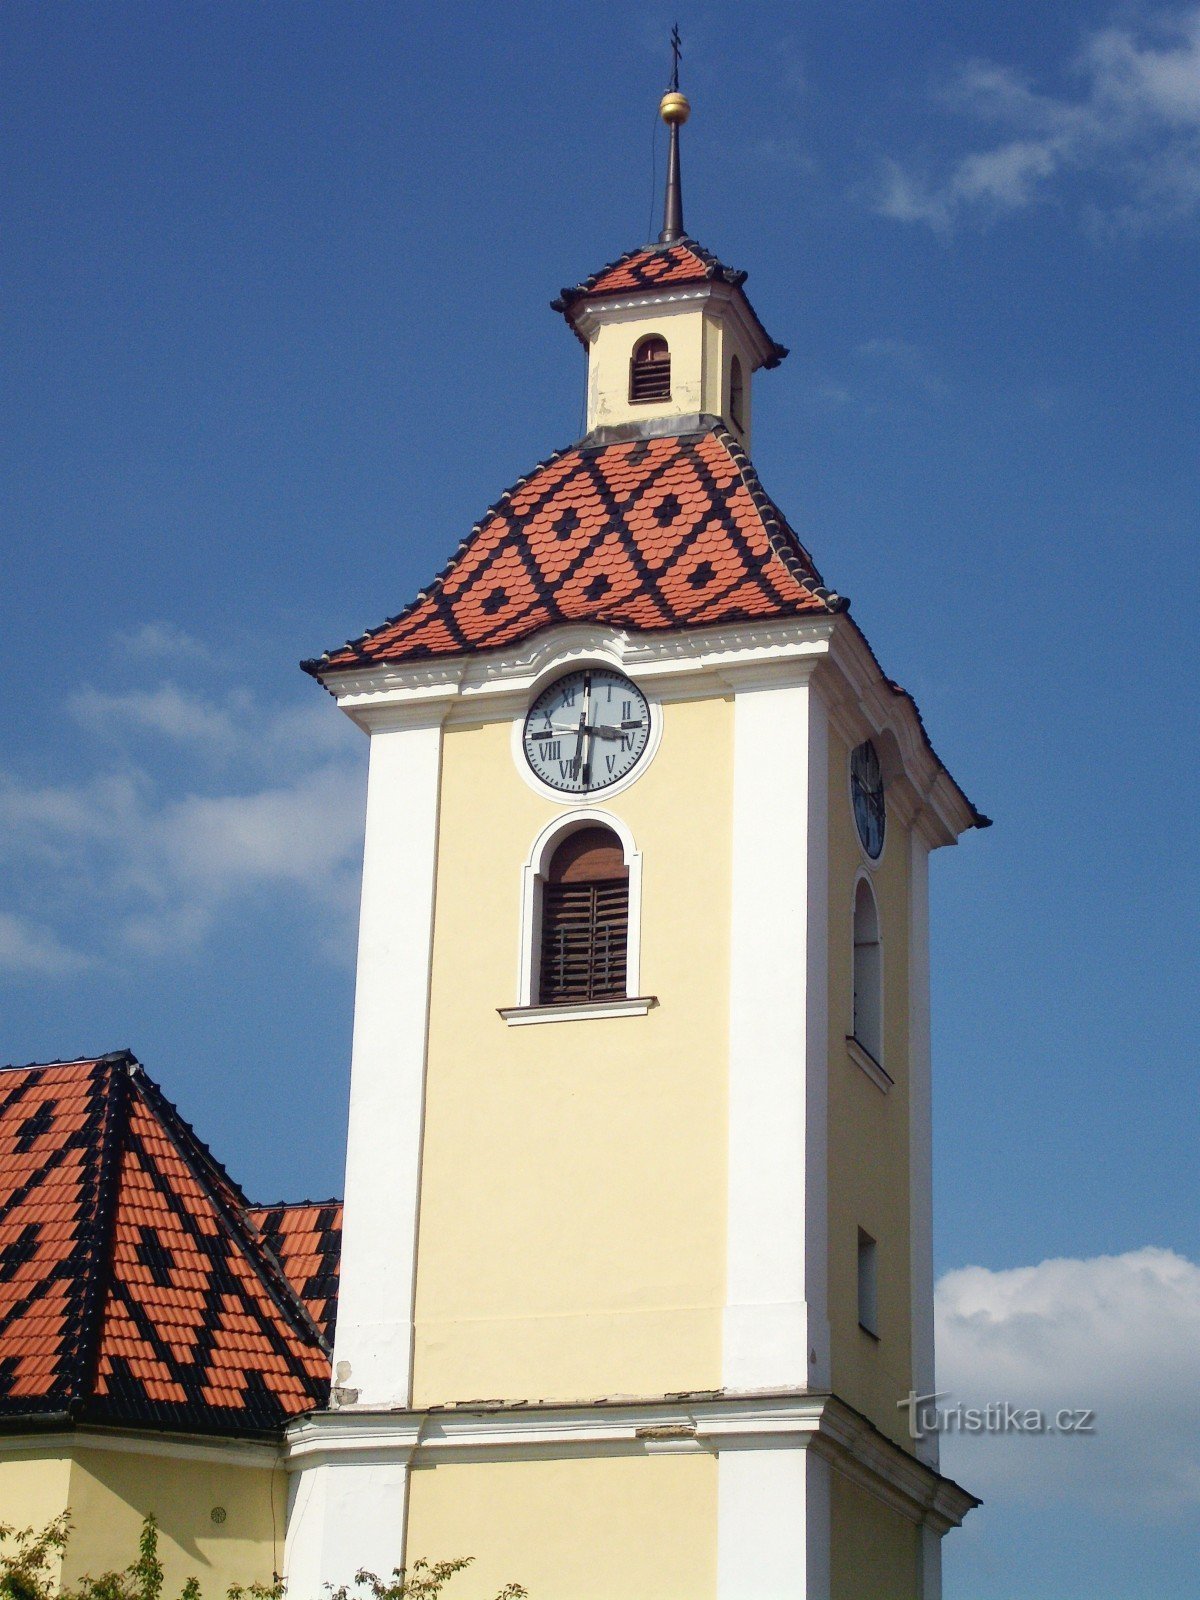 Kunovice (em U. Hradiště) - igreja de St. Pedro e Paulo